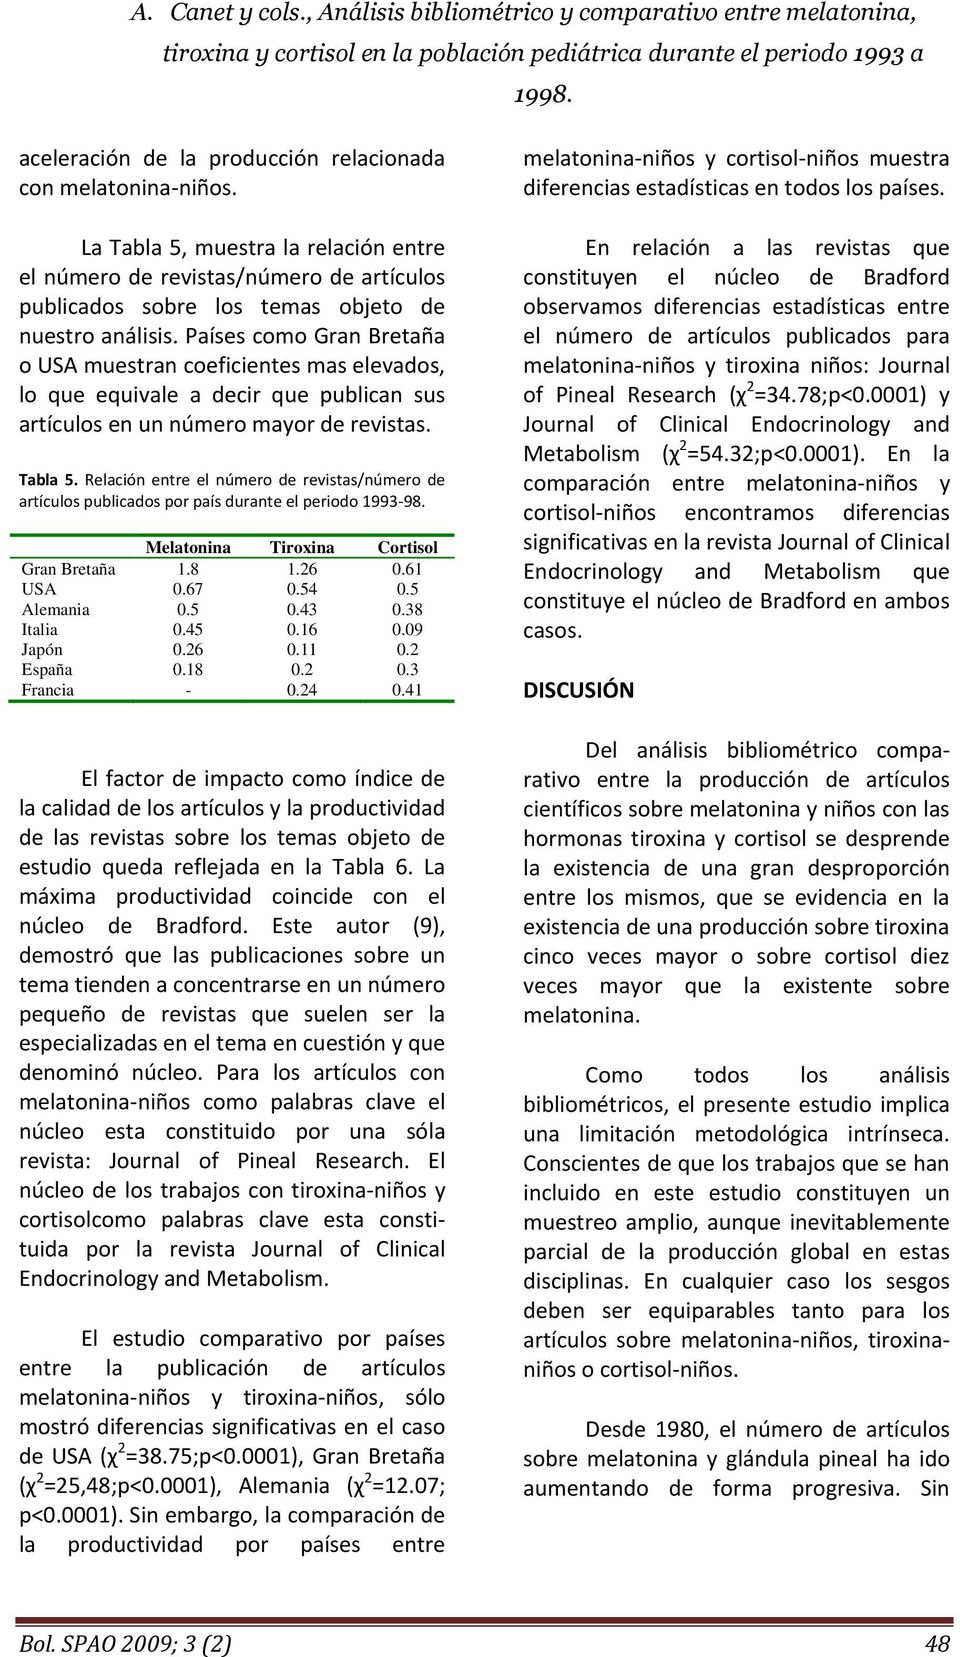 Relación entre el número de revistas/número de artículos publicados por país durante el periodo 1993-98. Melatonina Tiroxina Cortisol Gran Bretaña 1.8 1.26 0.61 USA 0.67 0.54 0.5 Alemania 0.5 0.43 0.